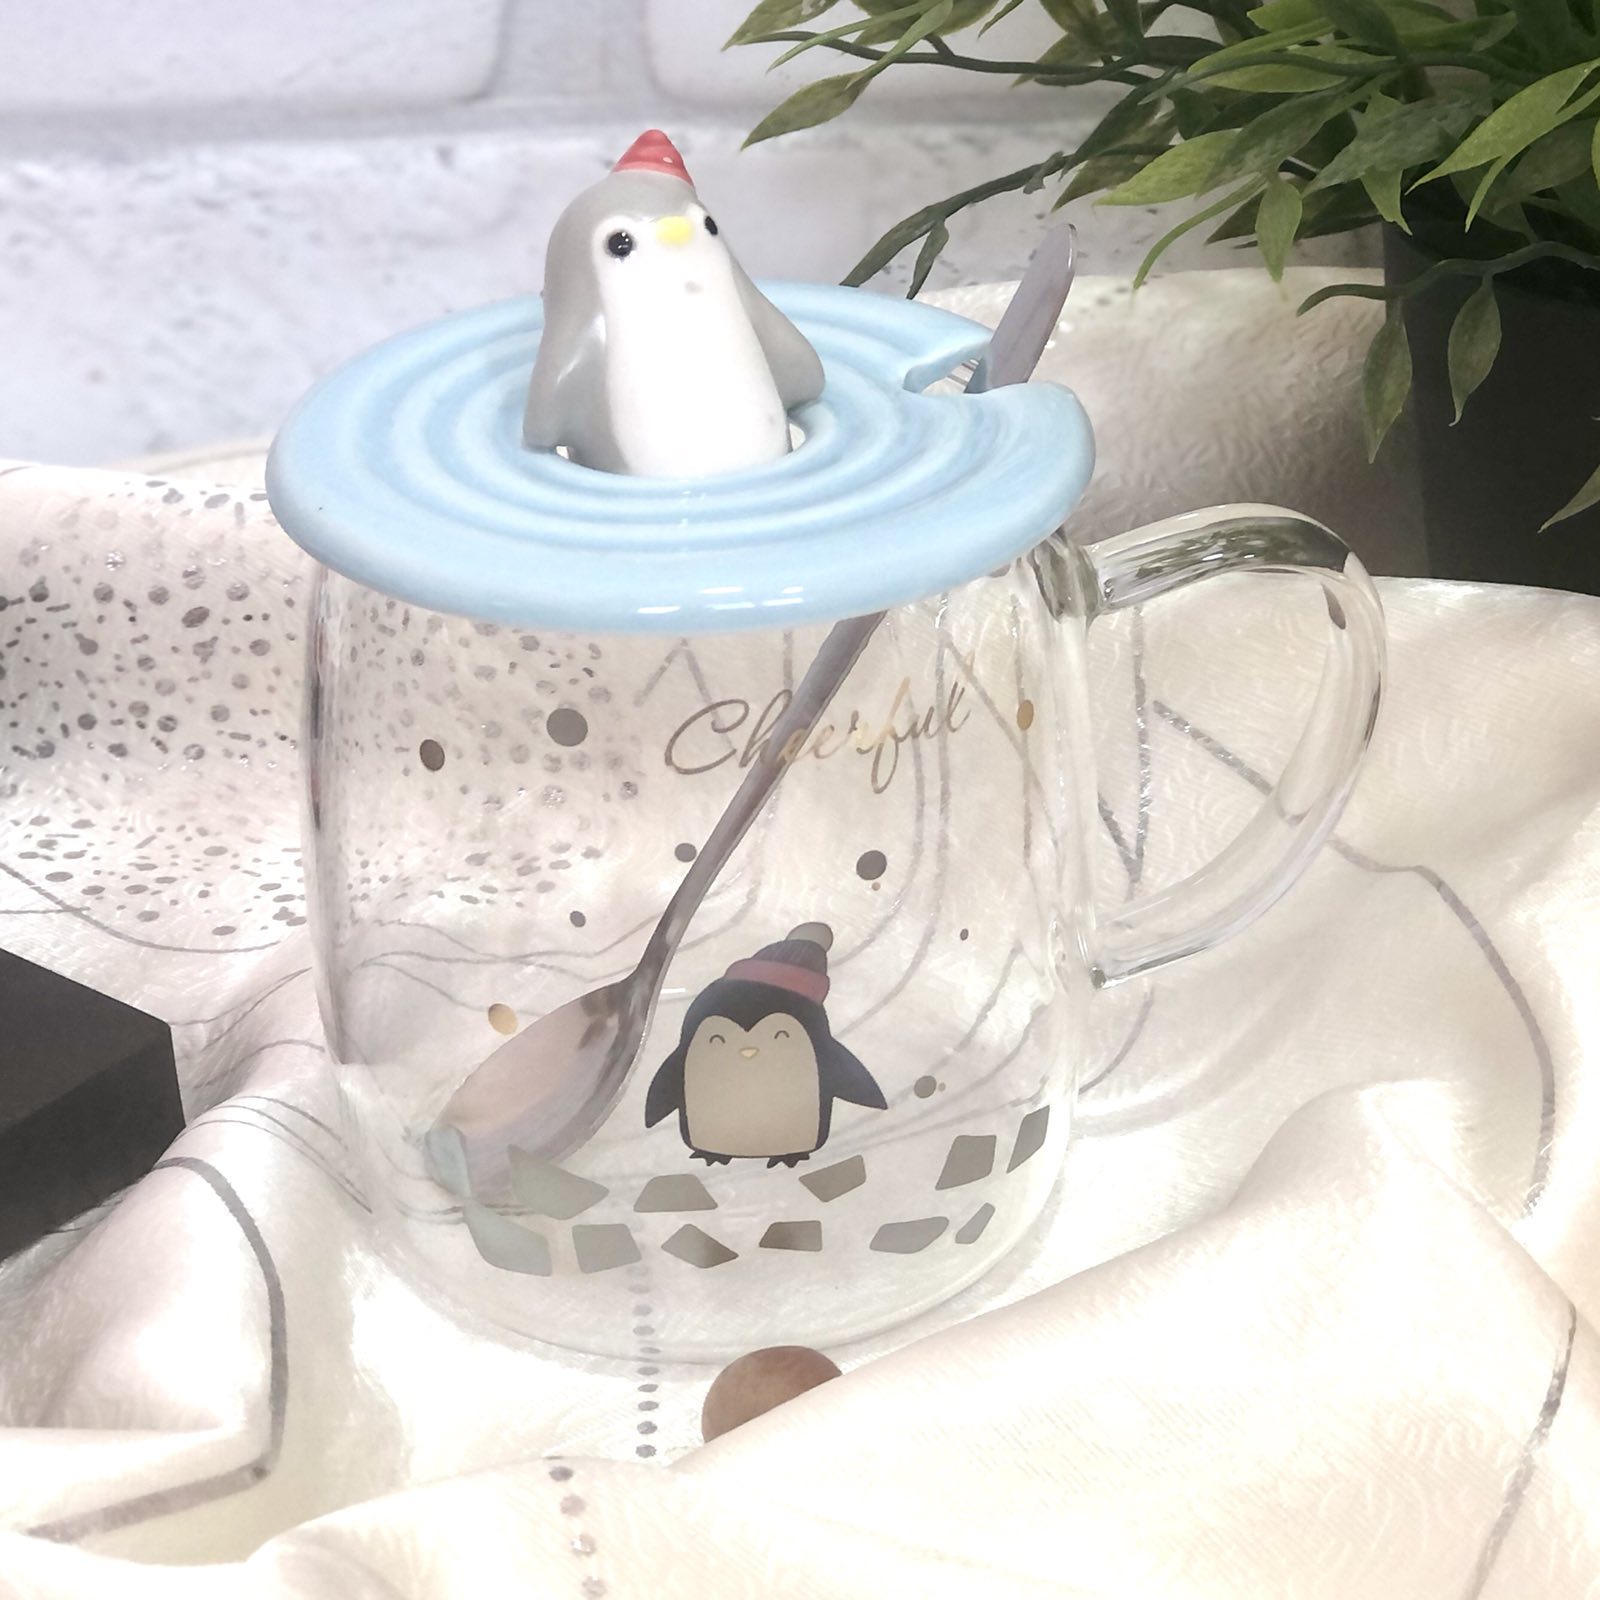 Чашка с крышкой и ложкой 400 мл "Penguin" стекло Stenson - 00527 ✅ базовая цена $5.98 ✔ Опт ✔ Скидки ✔ Заходите! - Интернет-магазин ✅ Фортуна-опт ✅